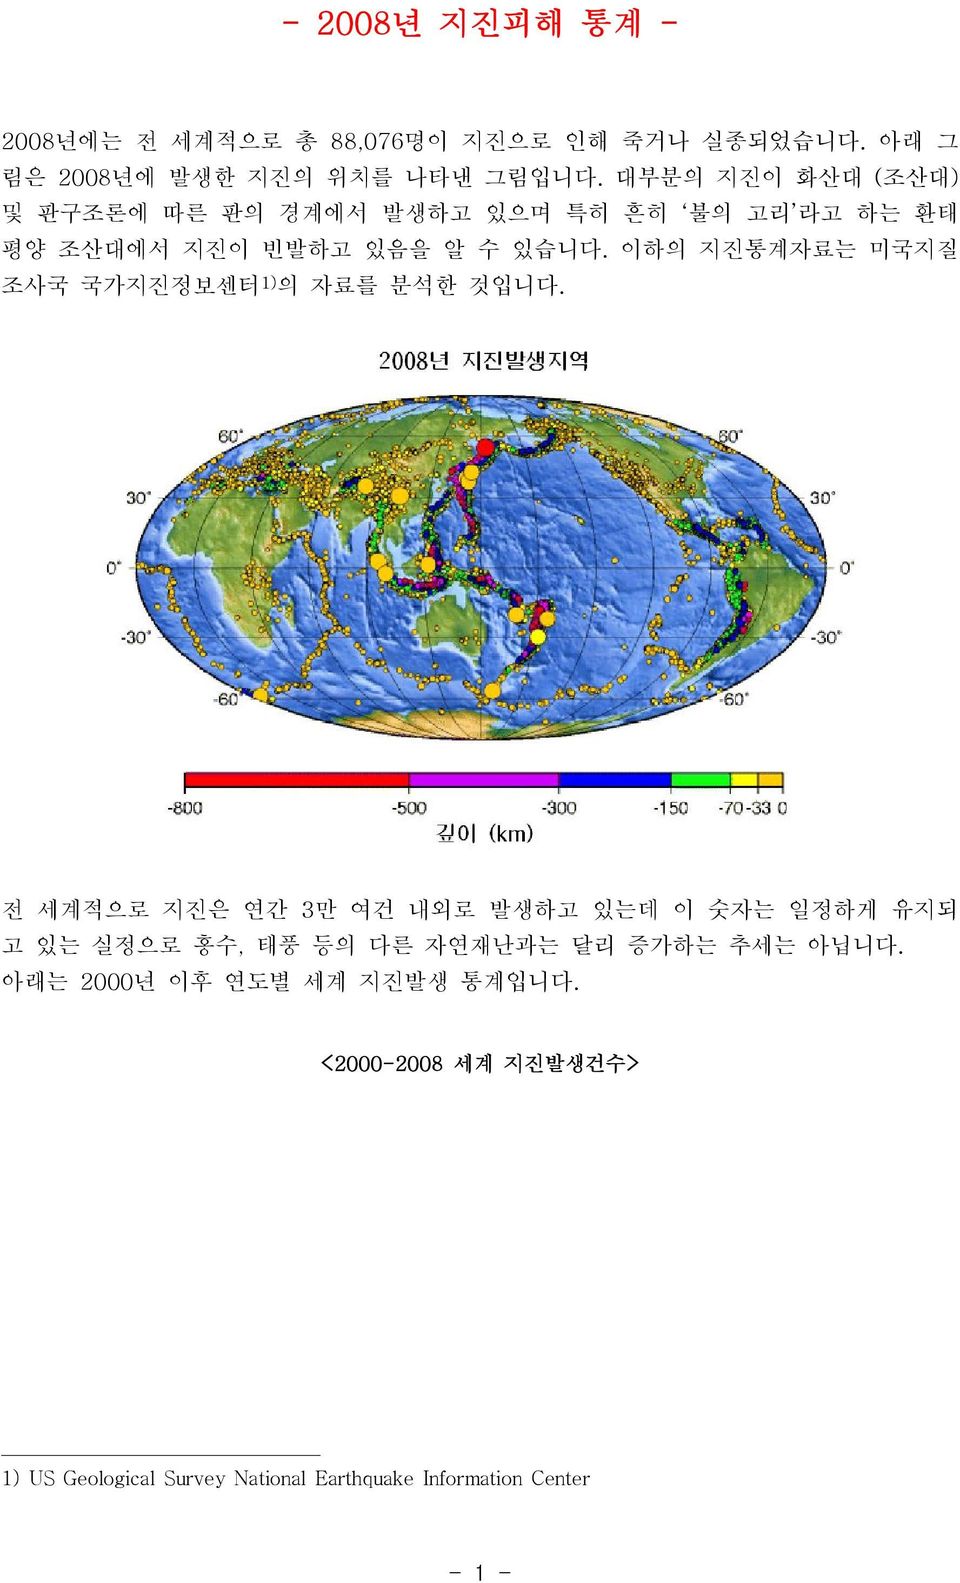 이하의 지진통계자료는 미국지질 조사국 국가지진정보센터1)의 자료를 분석한 것입니다.